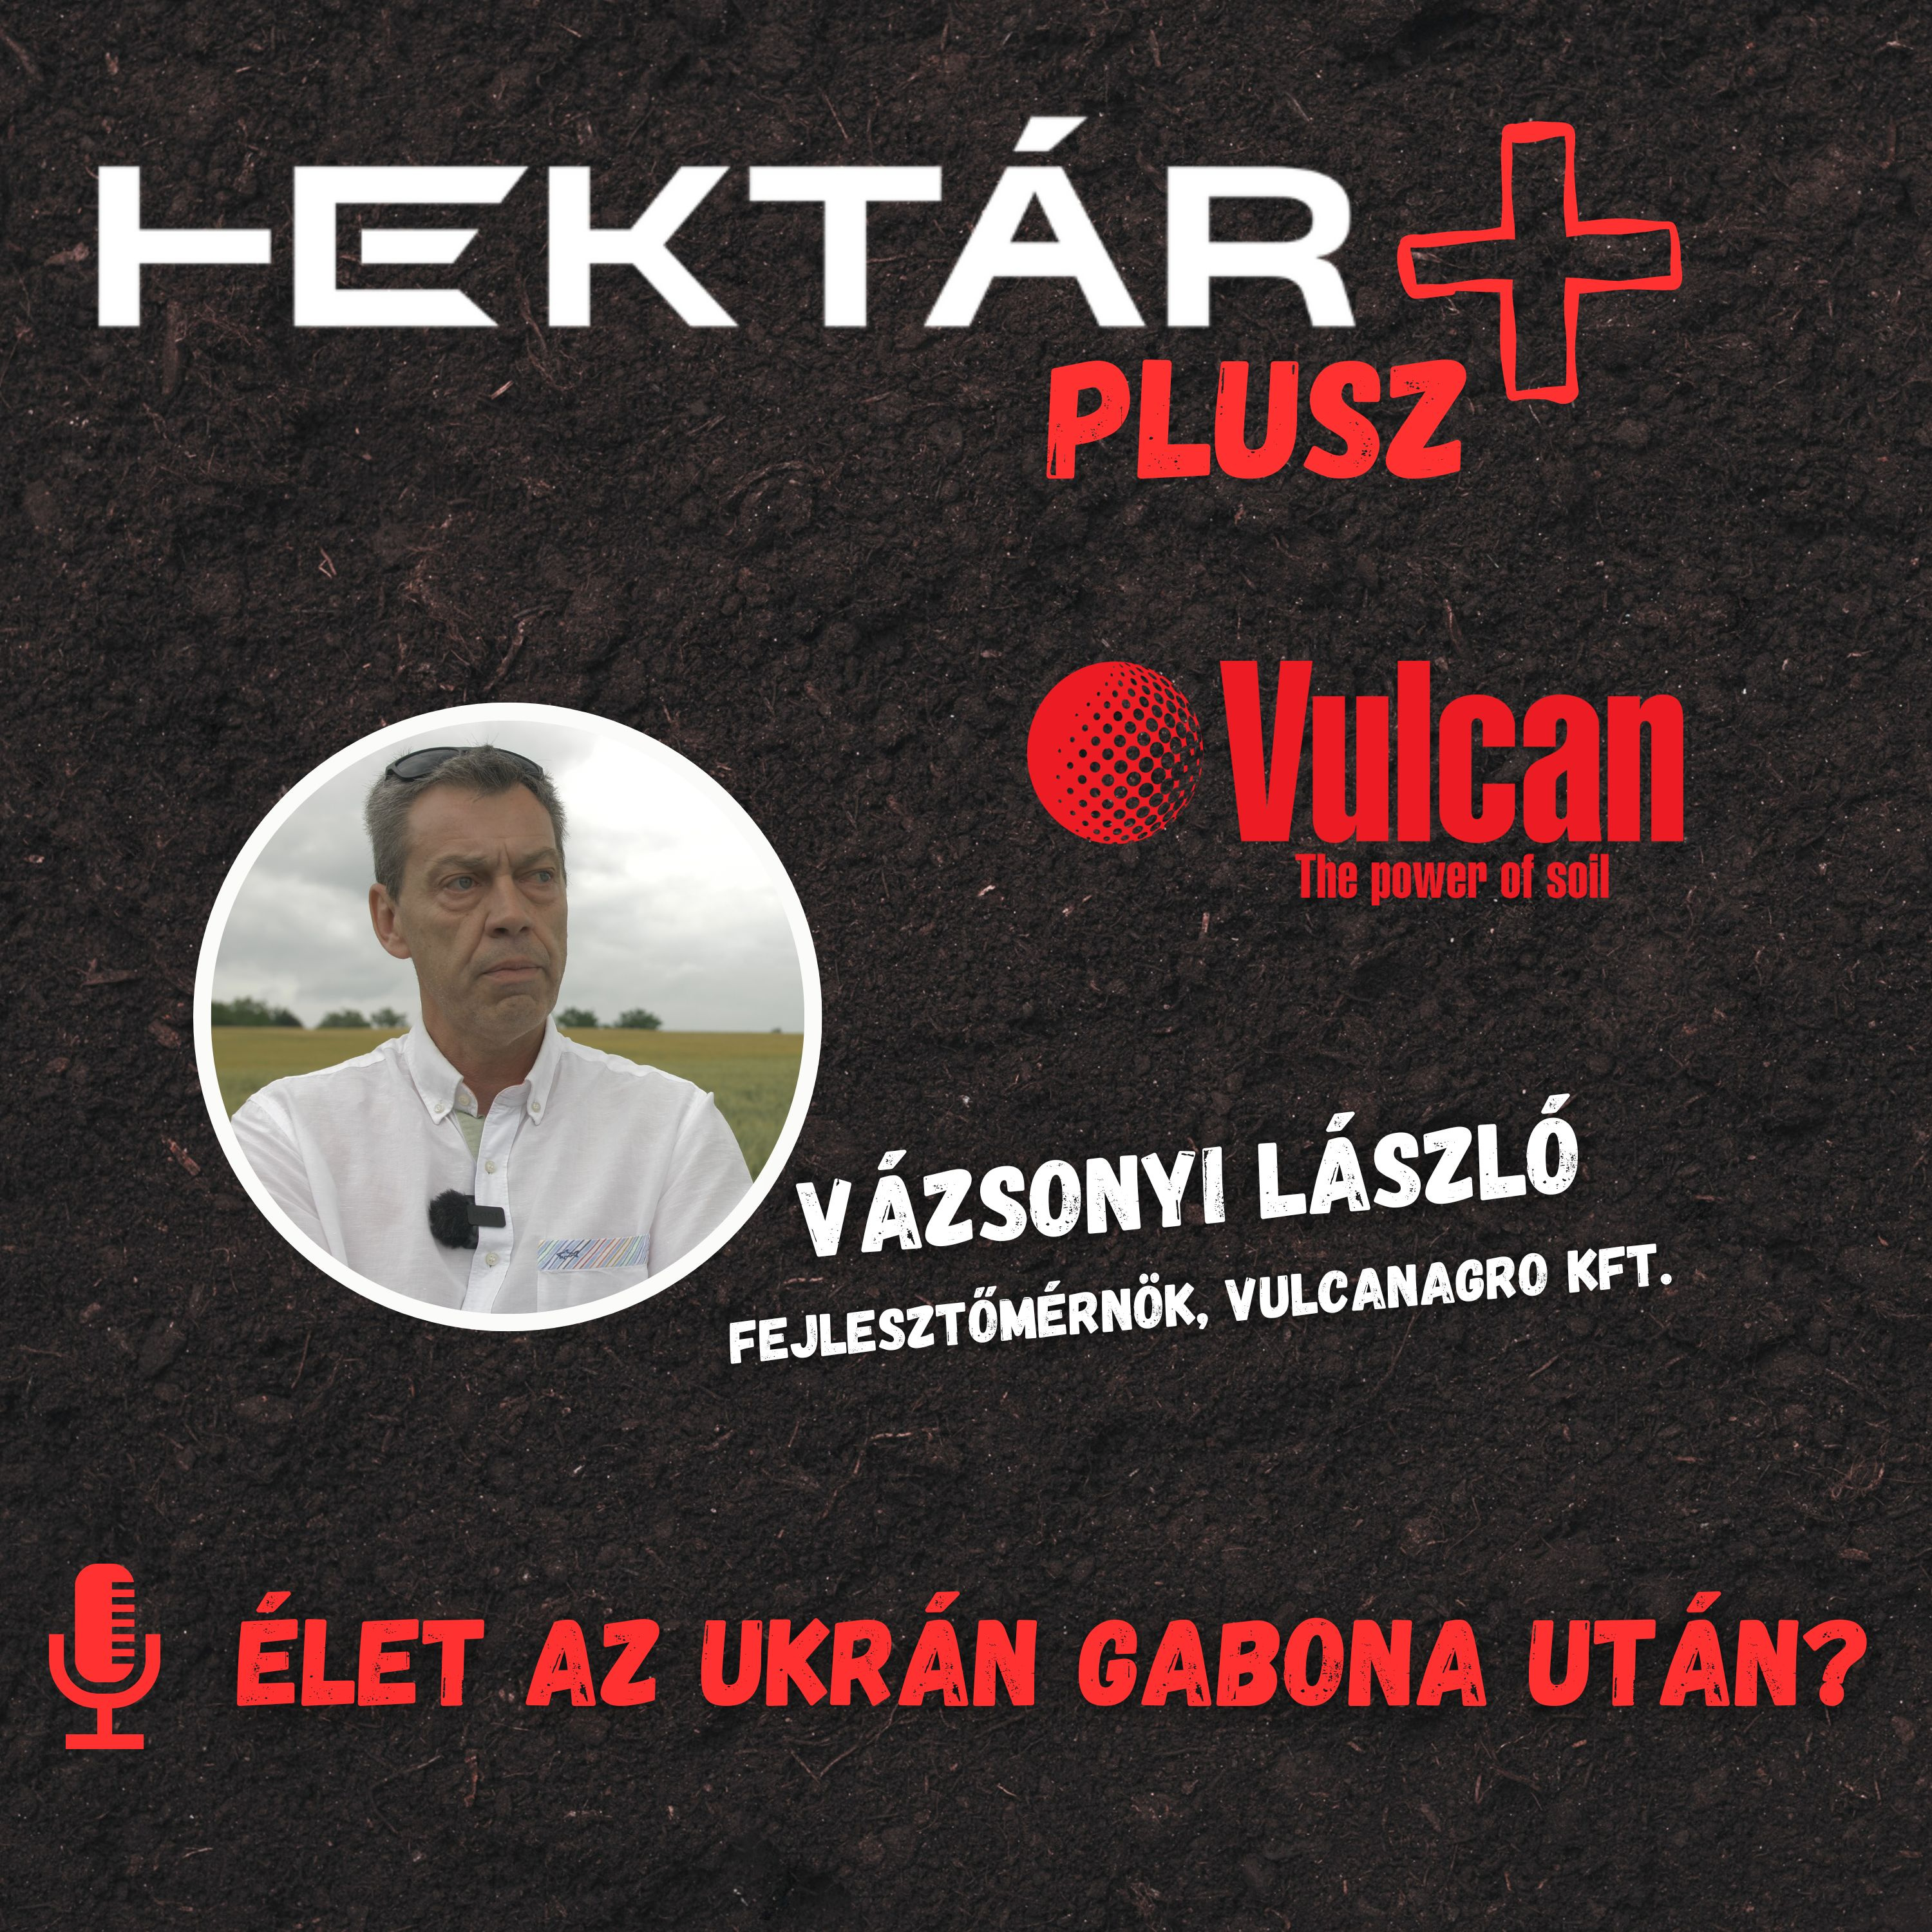 Élet az ukrán gabona után, és talajjavítási tanácsok - HEKTÁR PLUSZ a VulcanAgroval